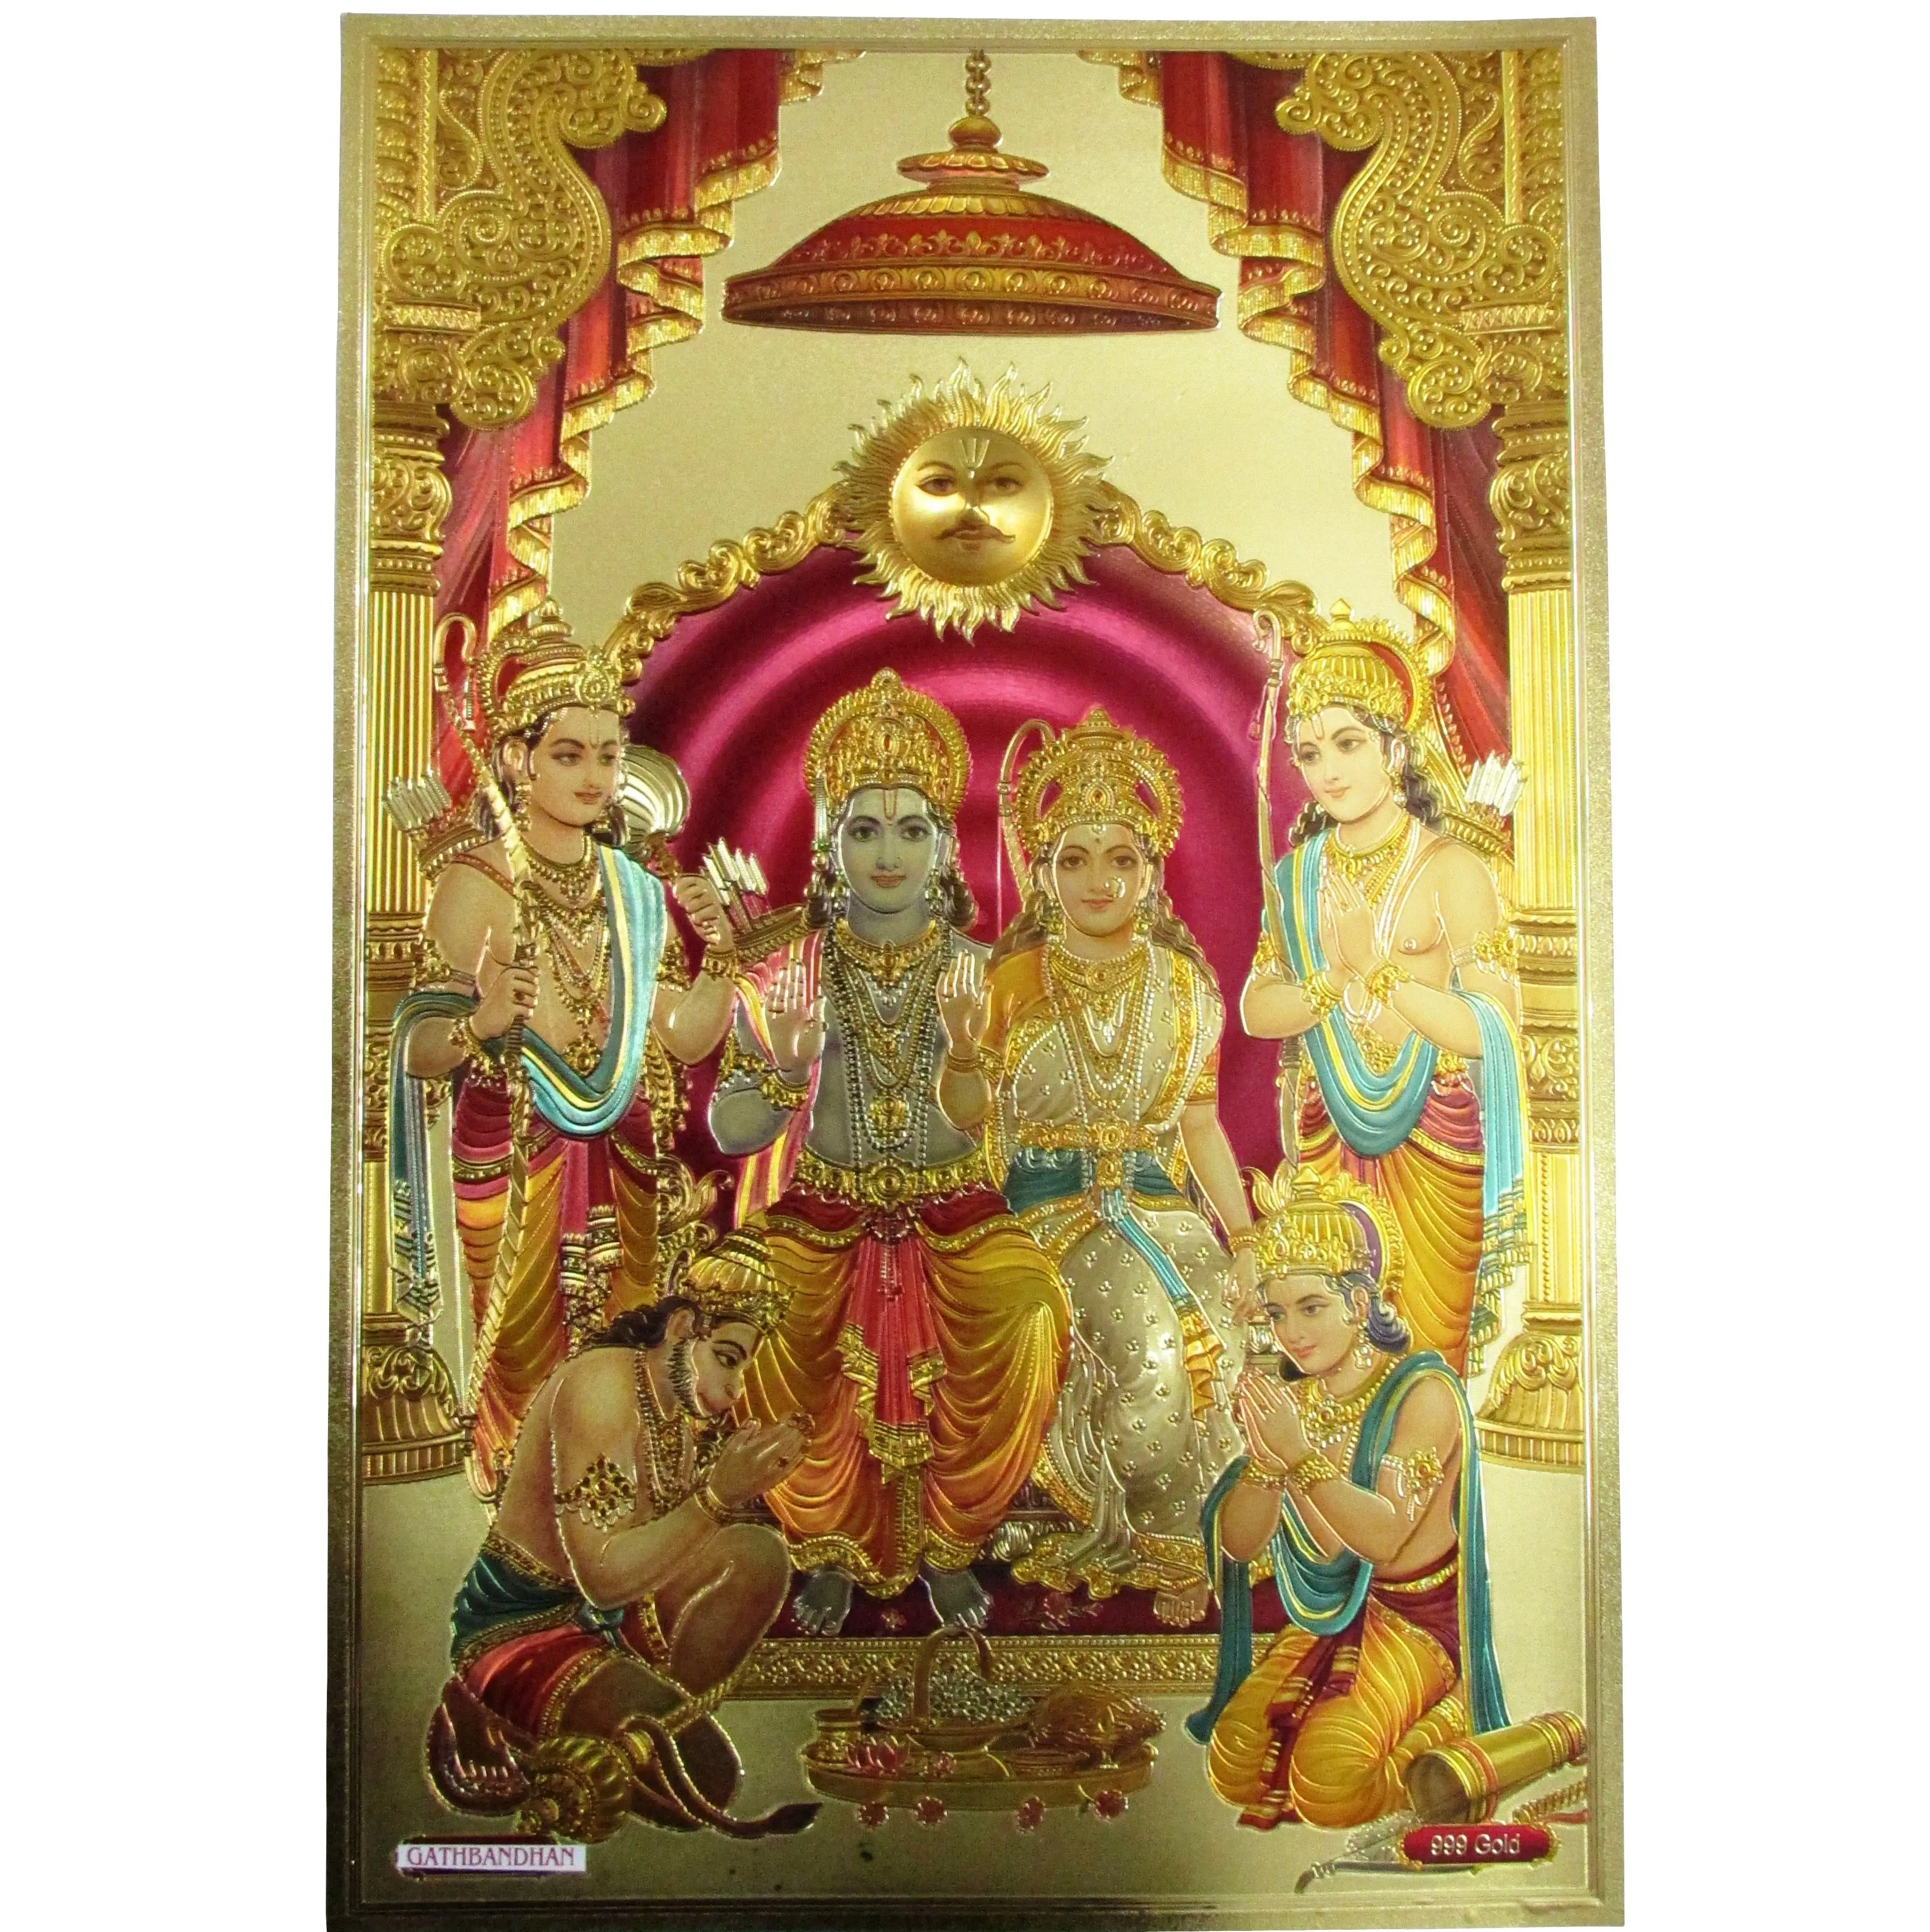 Gold folie 3D Indische Gott Goldfolie Bild Kunst und Handwerk Indische 24k für dekoration oder sammlung